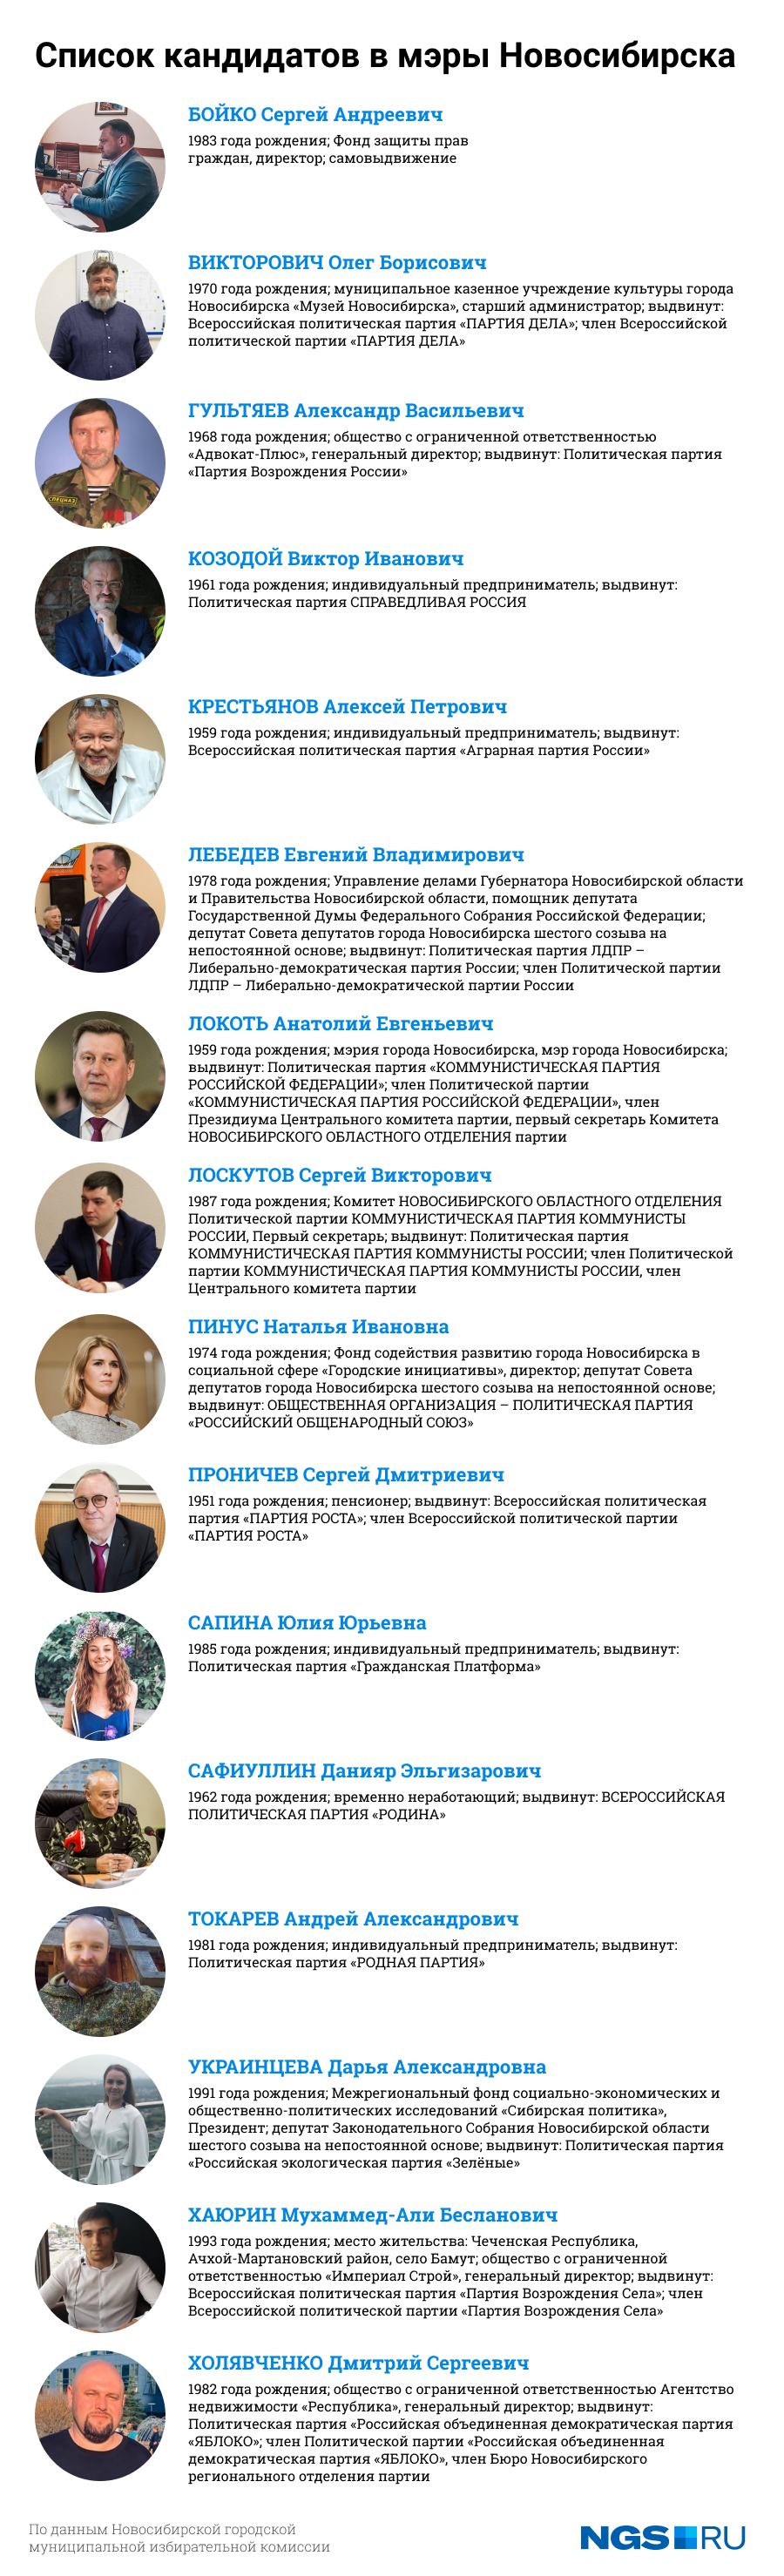 Новосибирск: НГС собрал 16 кандидатов в мэры в одном бюллетене